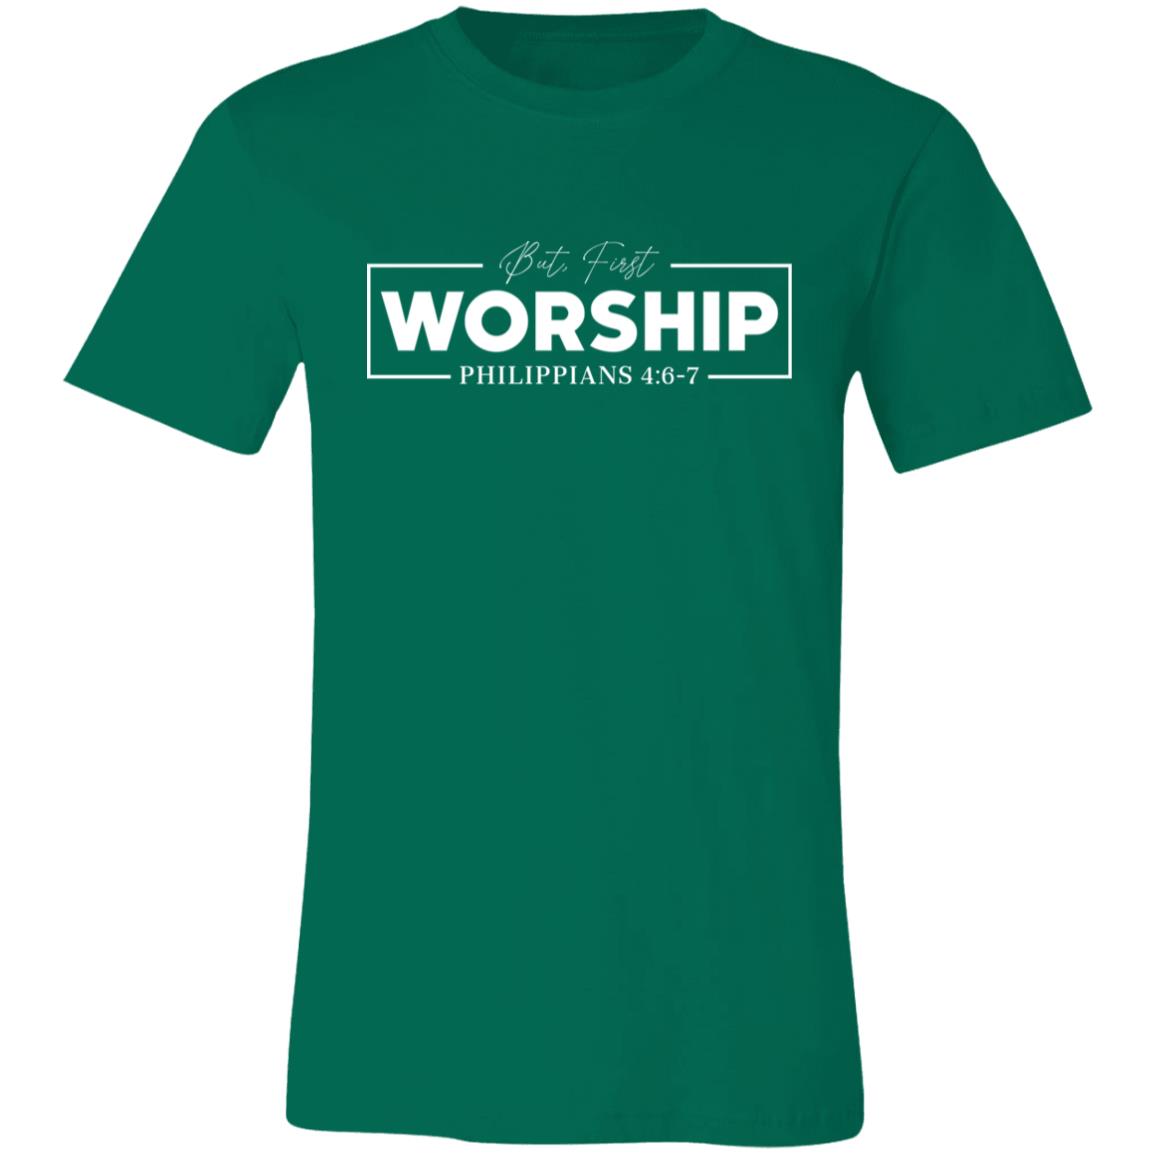 But First Worship T-Shirt - GladEyze Apparel